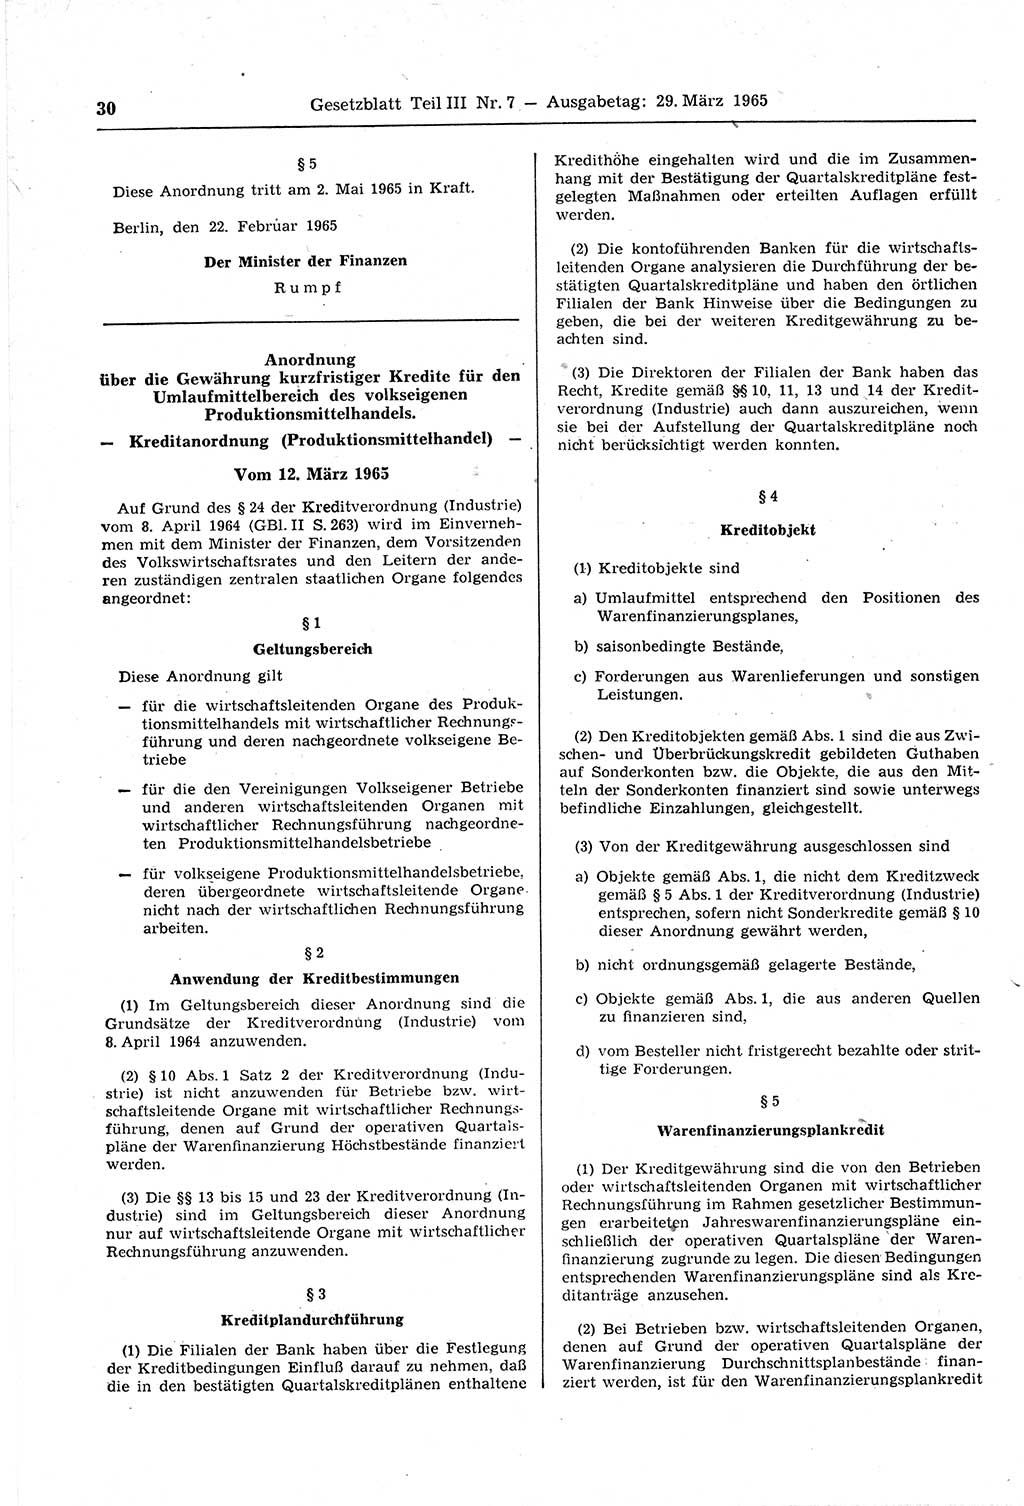 Gesetzblatt (GBl.) der Deutschen Demokratischen Republik (DDR) Teil ⅠⅠⅠ 1965, Seite 30 (GBl. DDR ⅠⅠⅠ 1965, S. 30)